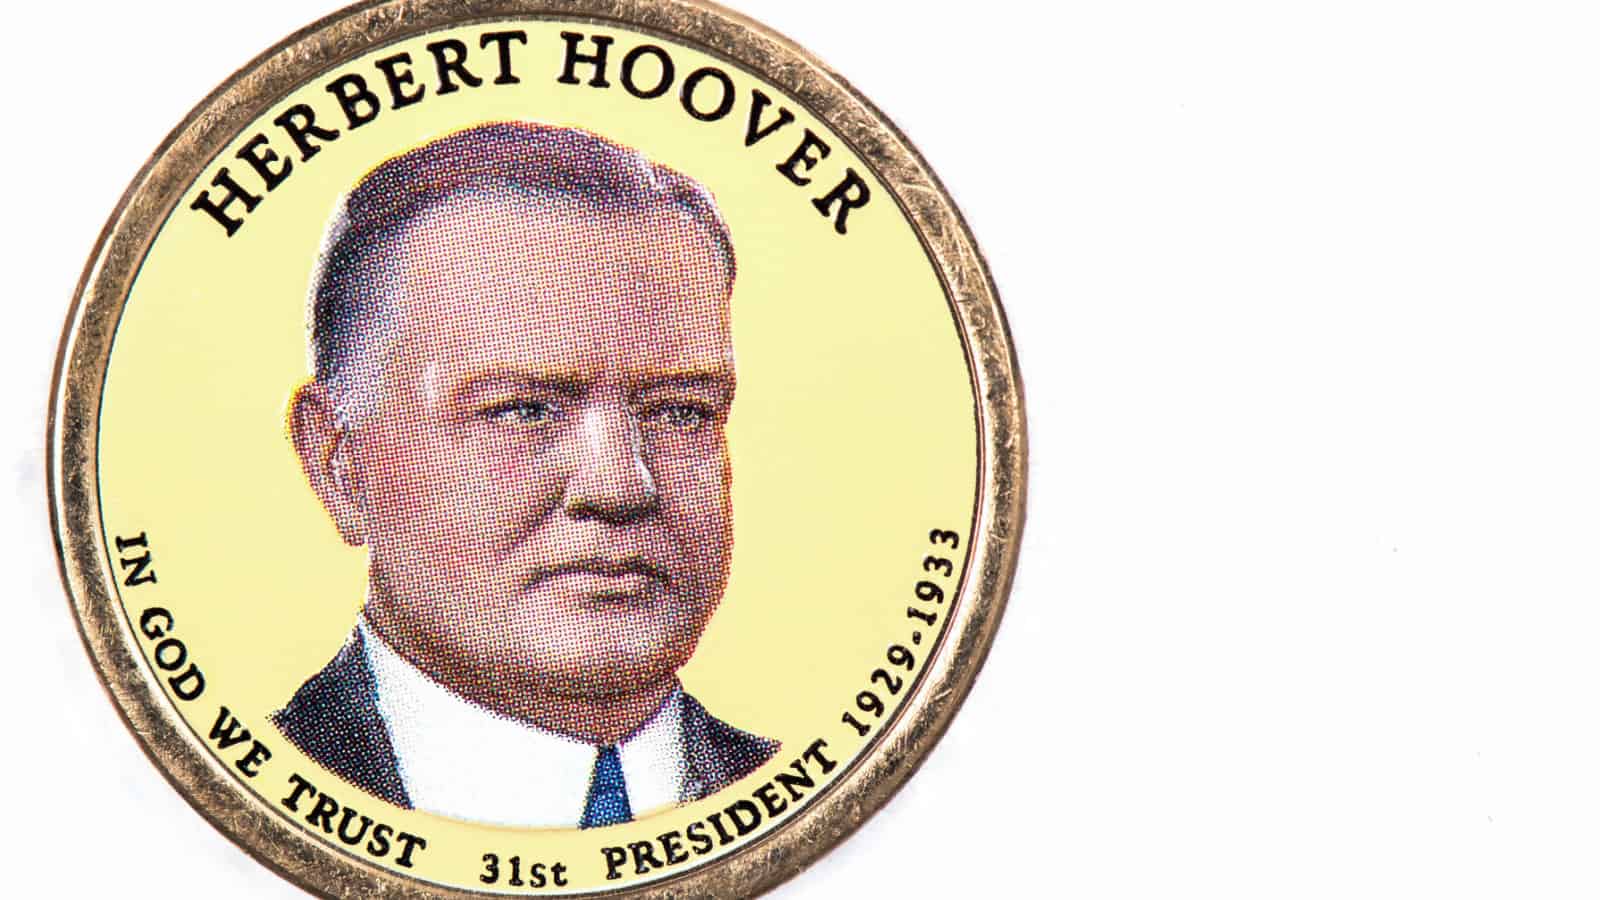 Herbert Hoover on coin